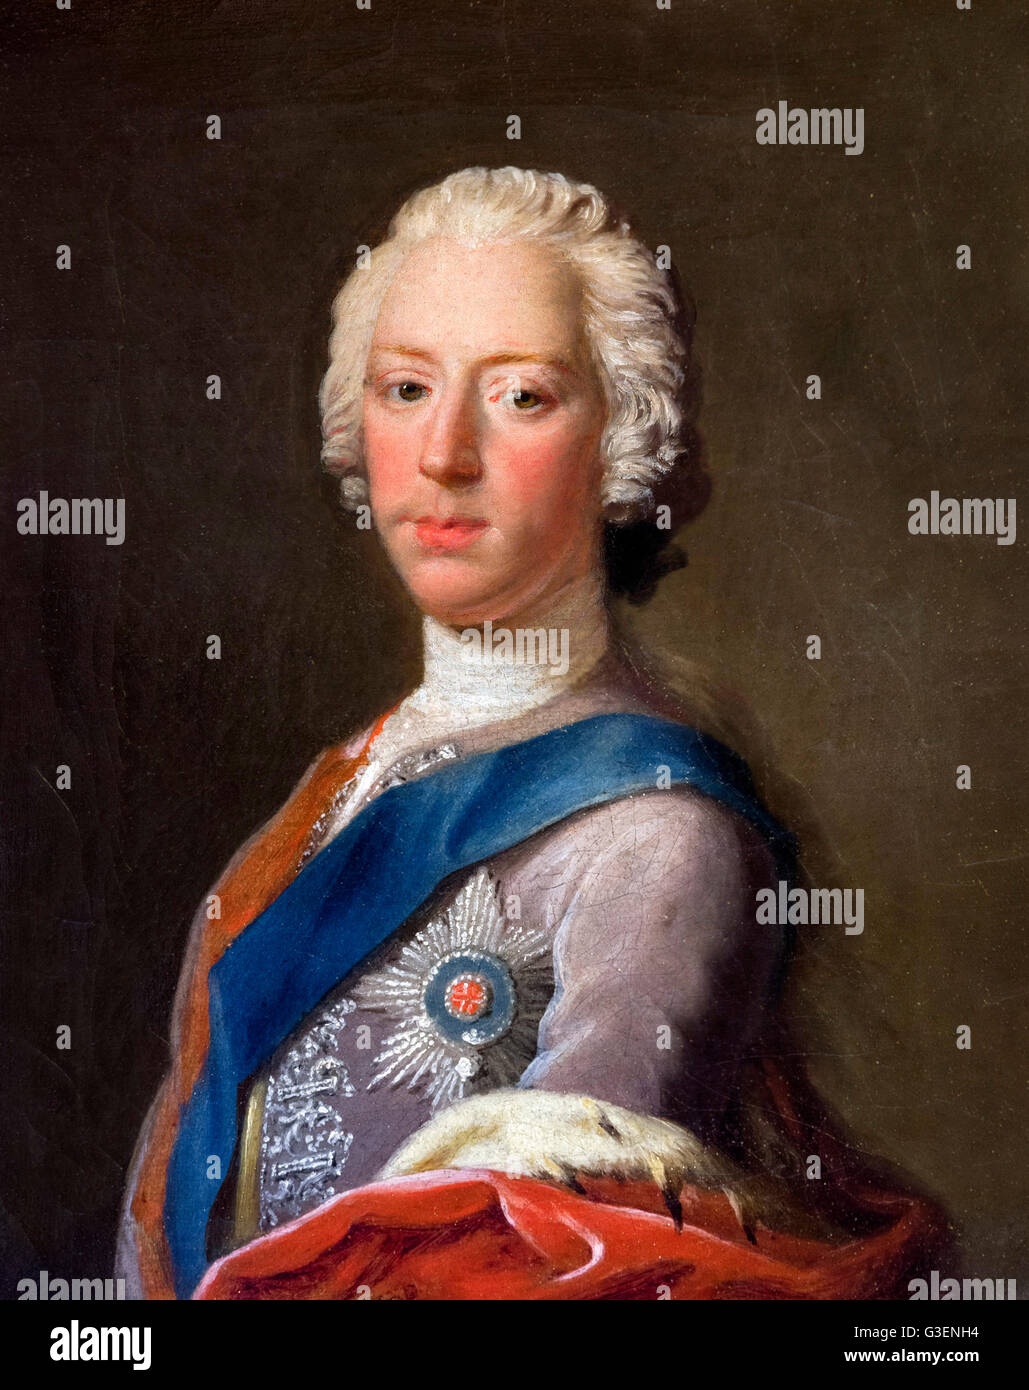 Bonnie Prince Charlie portrait. Le prince Charles Édouard Stuart (1720-1788), peinture par Allan Ramsay, huile sur toile, c.1745. Banque D'Images